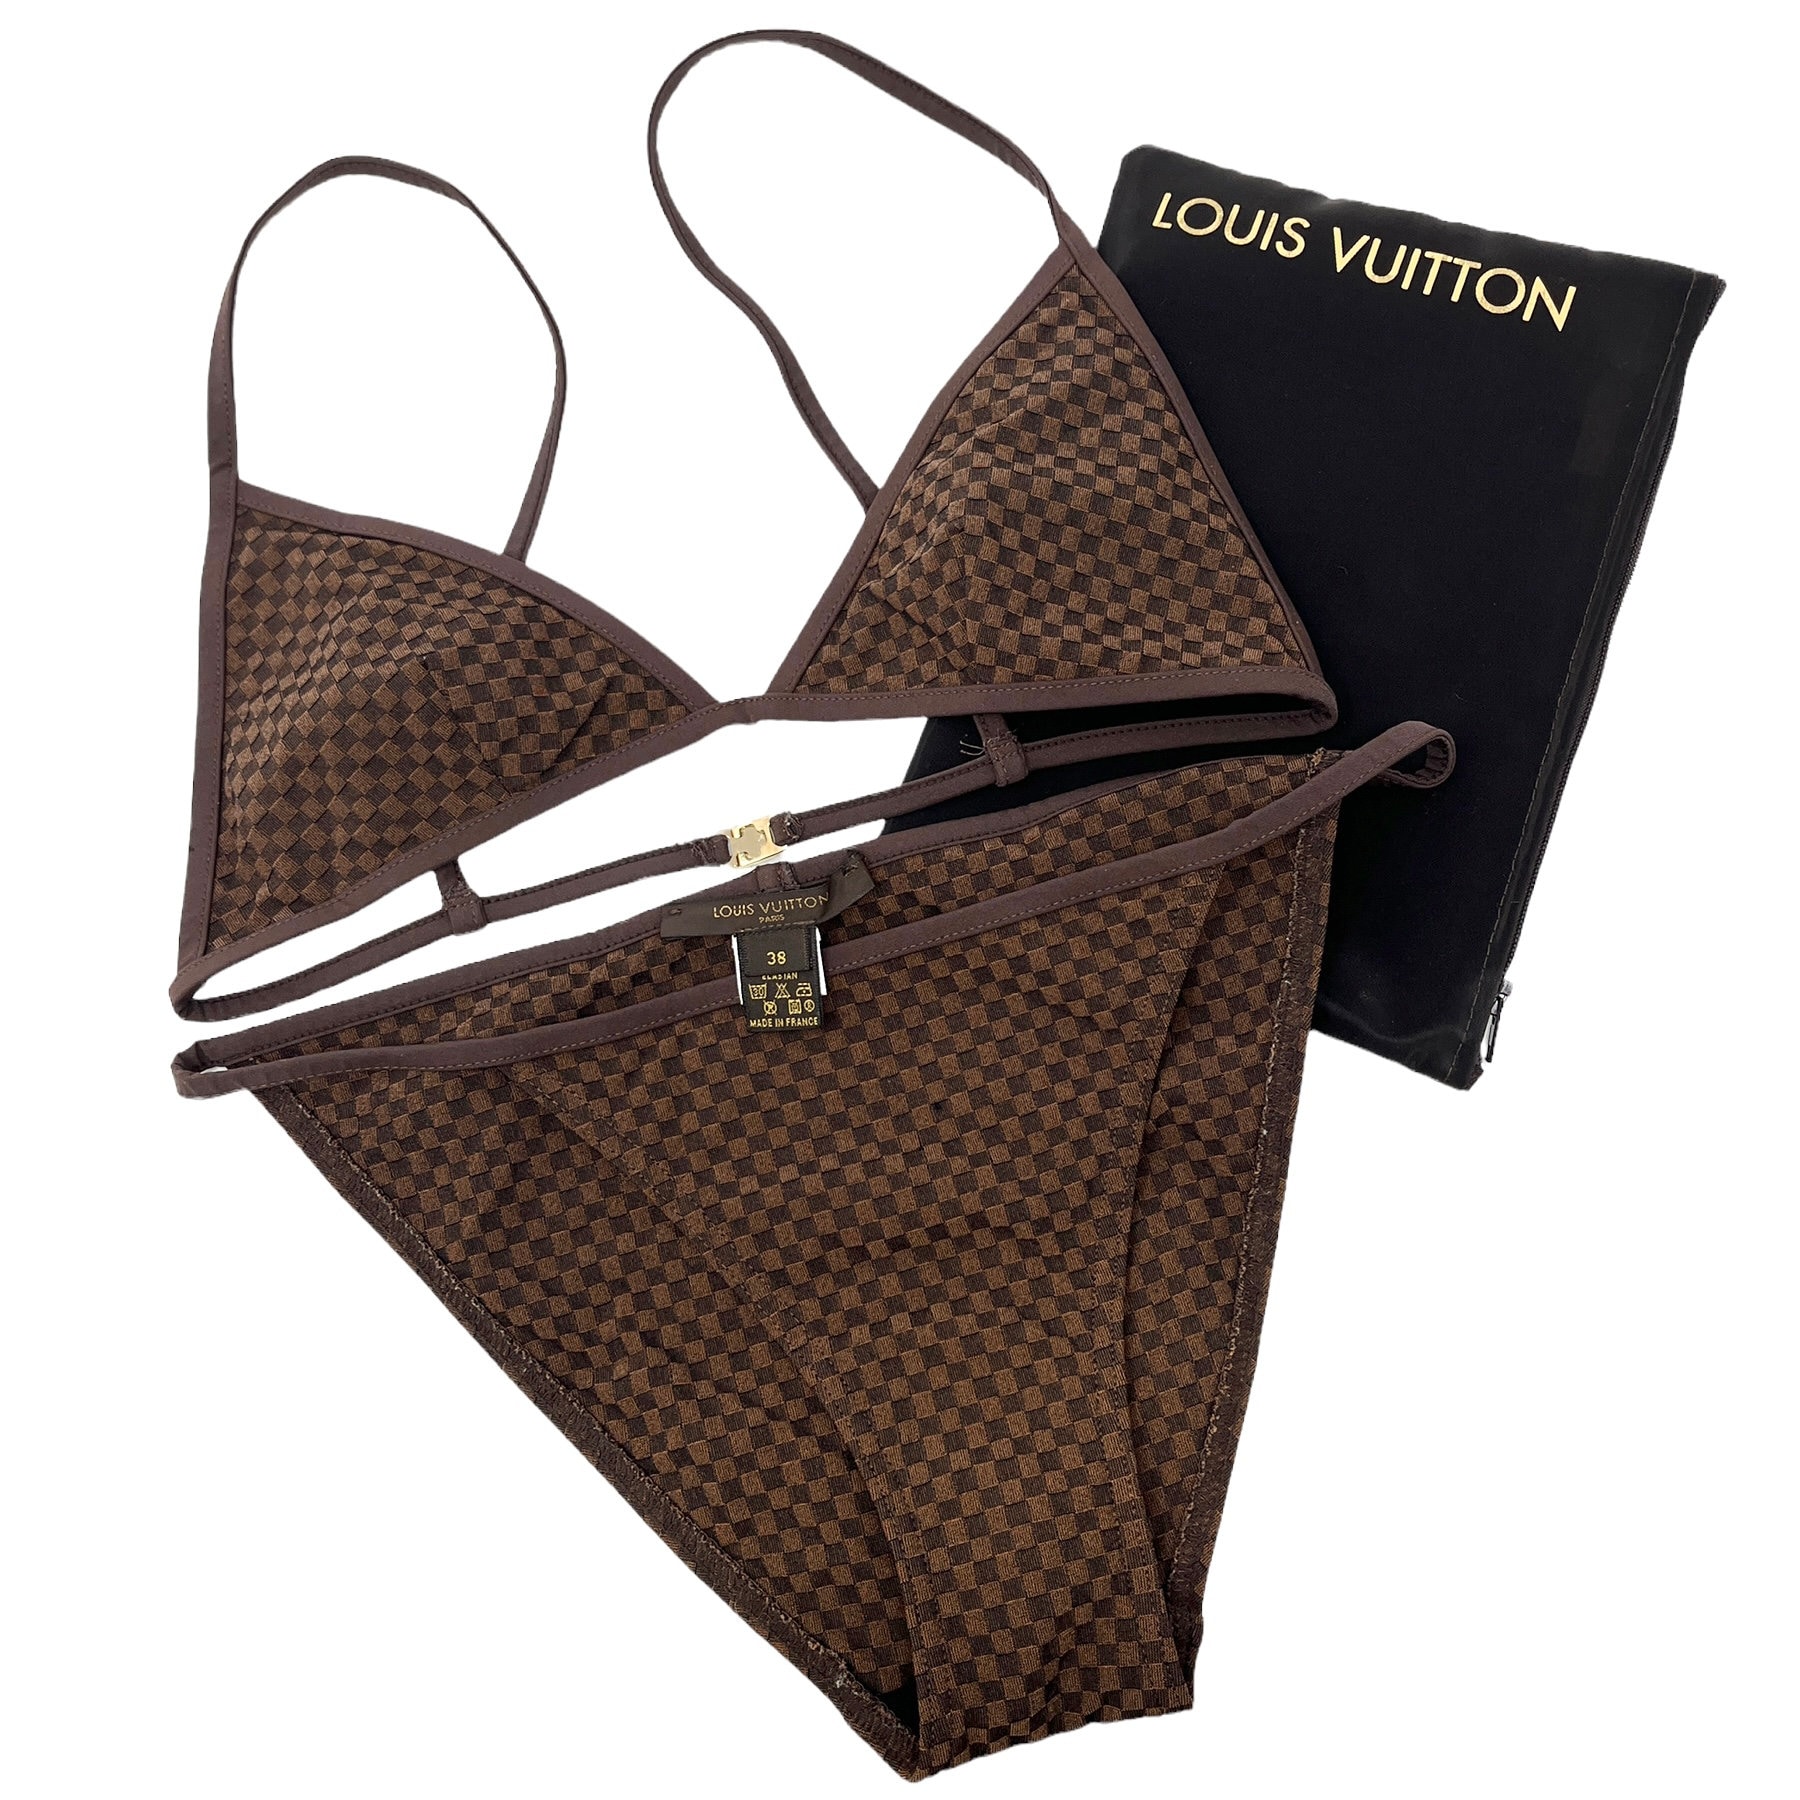 Louis Vuitton Monogram Embellished Bikini